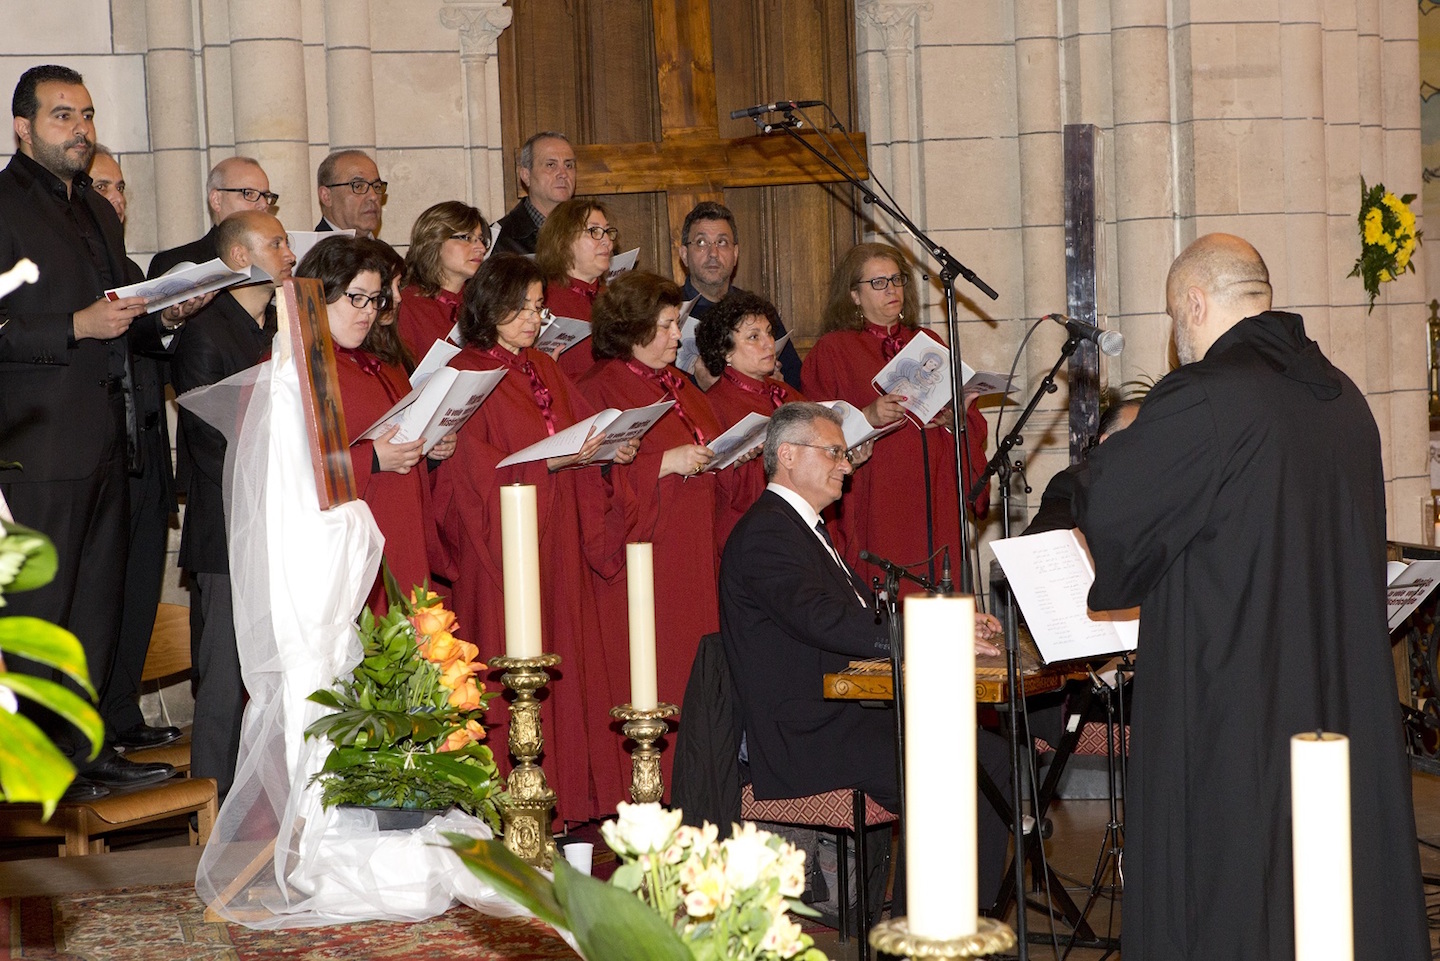 Choeur de l’Église maronite en concert ce mercredi 6 juillet à 21h à la cathédrale de Rouen. © DR